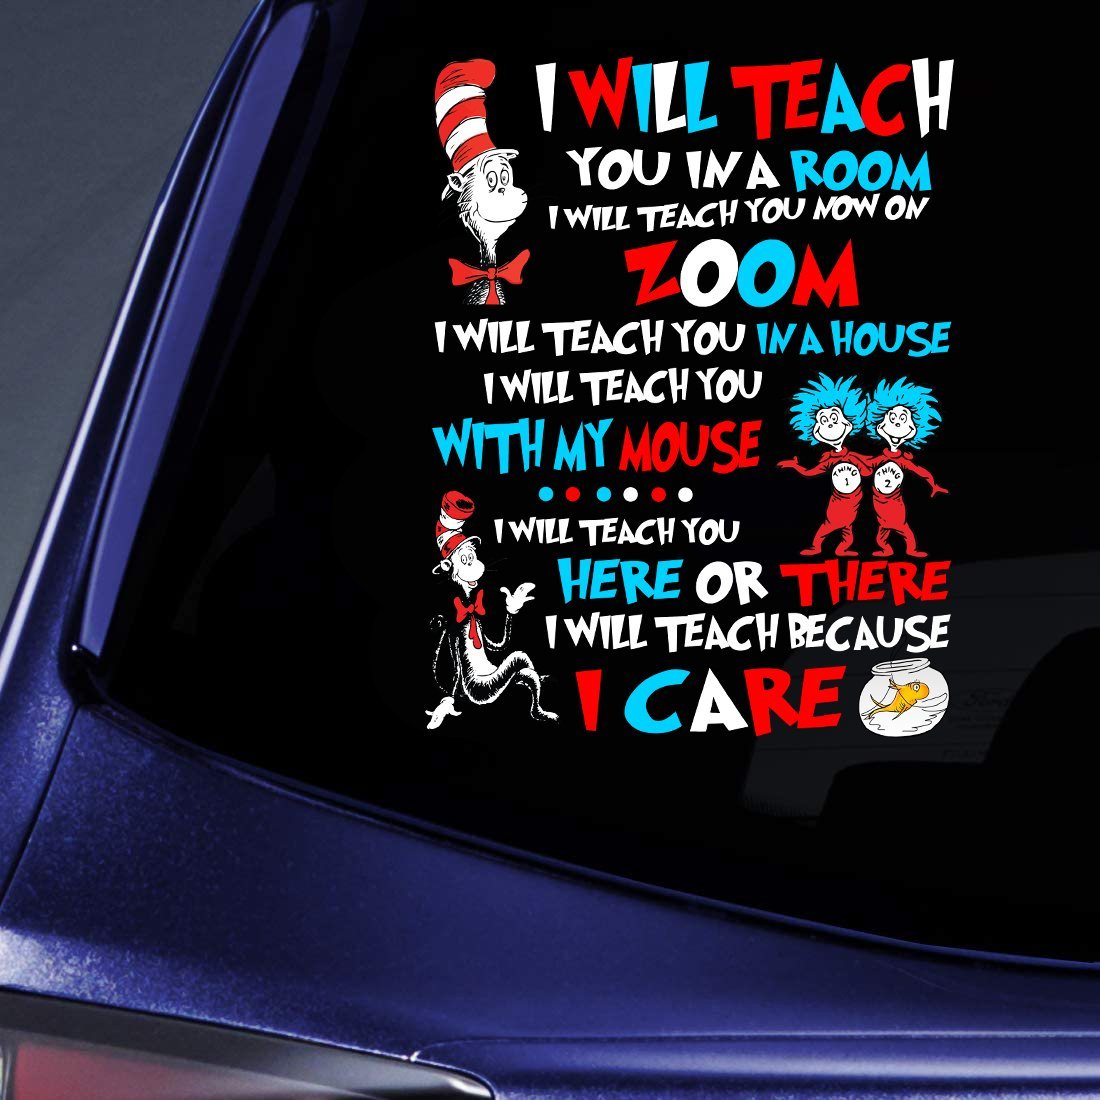 Teacher Car Decal Sticker | Waterproof | Vinyl Sticker